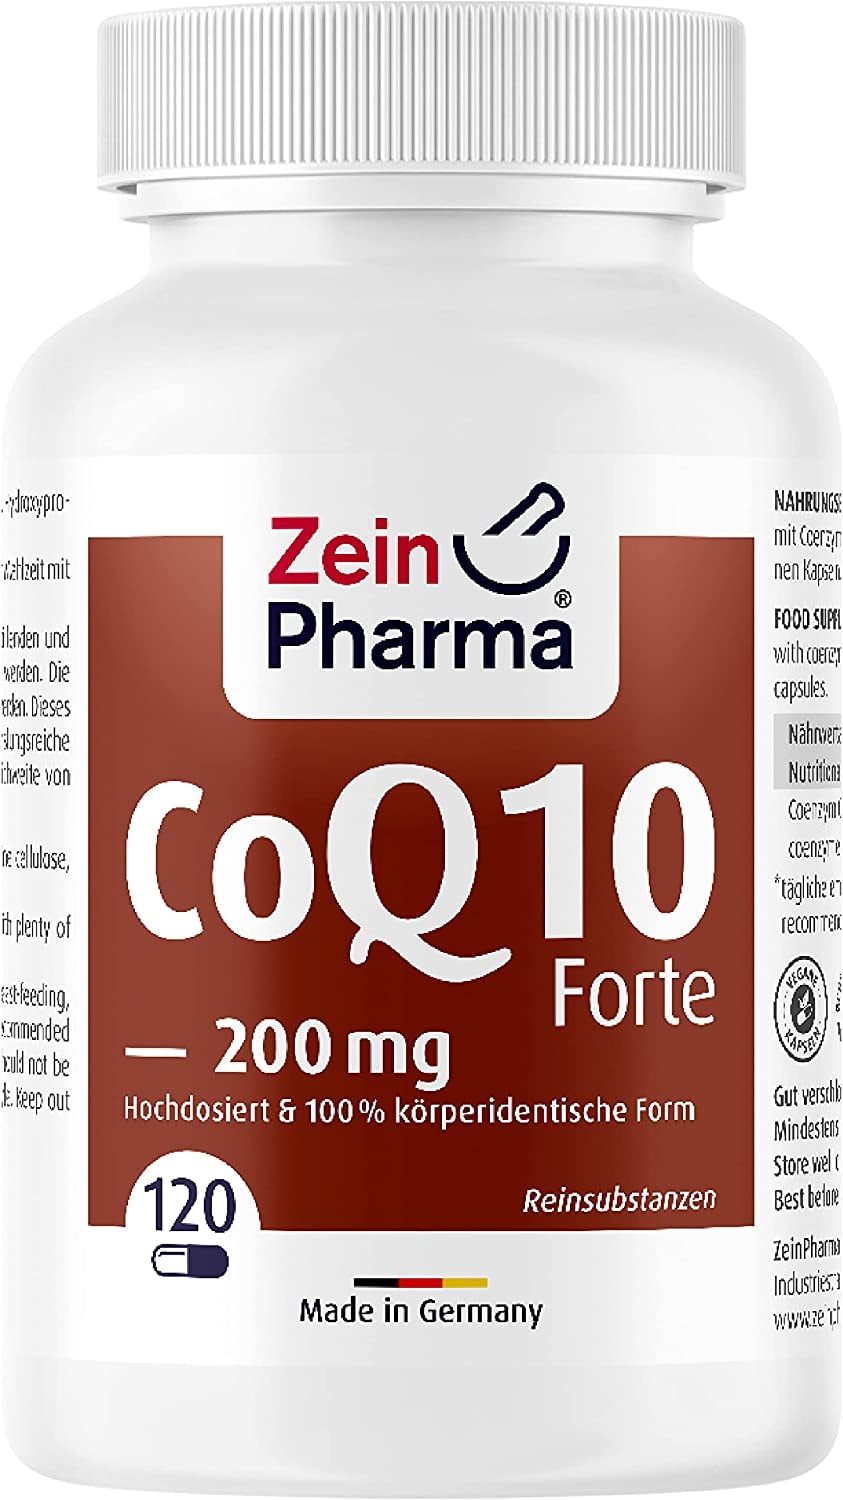 ZeinPharma Coenzym Q10 forte 200mg Kapseln - 120 vegane Kapseln mit Ubichinon Coenzym Q10 hochdosiert, 100% rein, Nahrungsergänzungsmittel Energie, 4 Monatsvorrat, laborgeprüft - Made in Germany